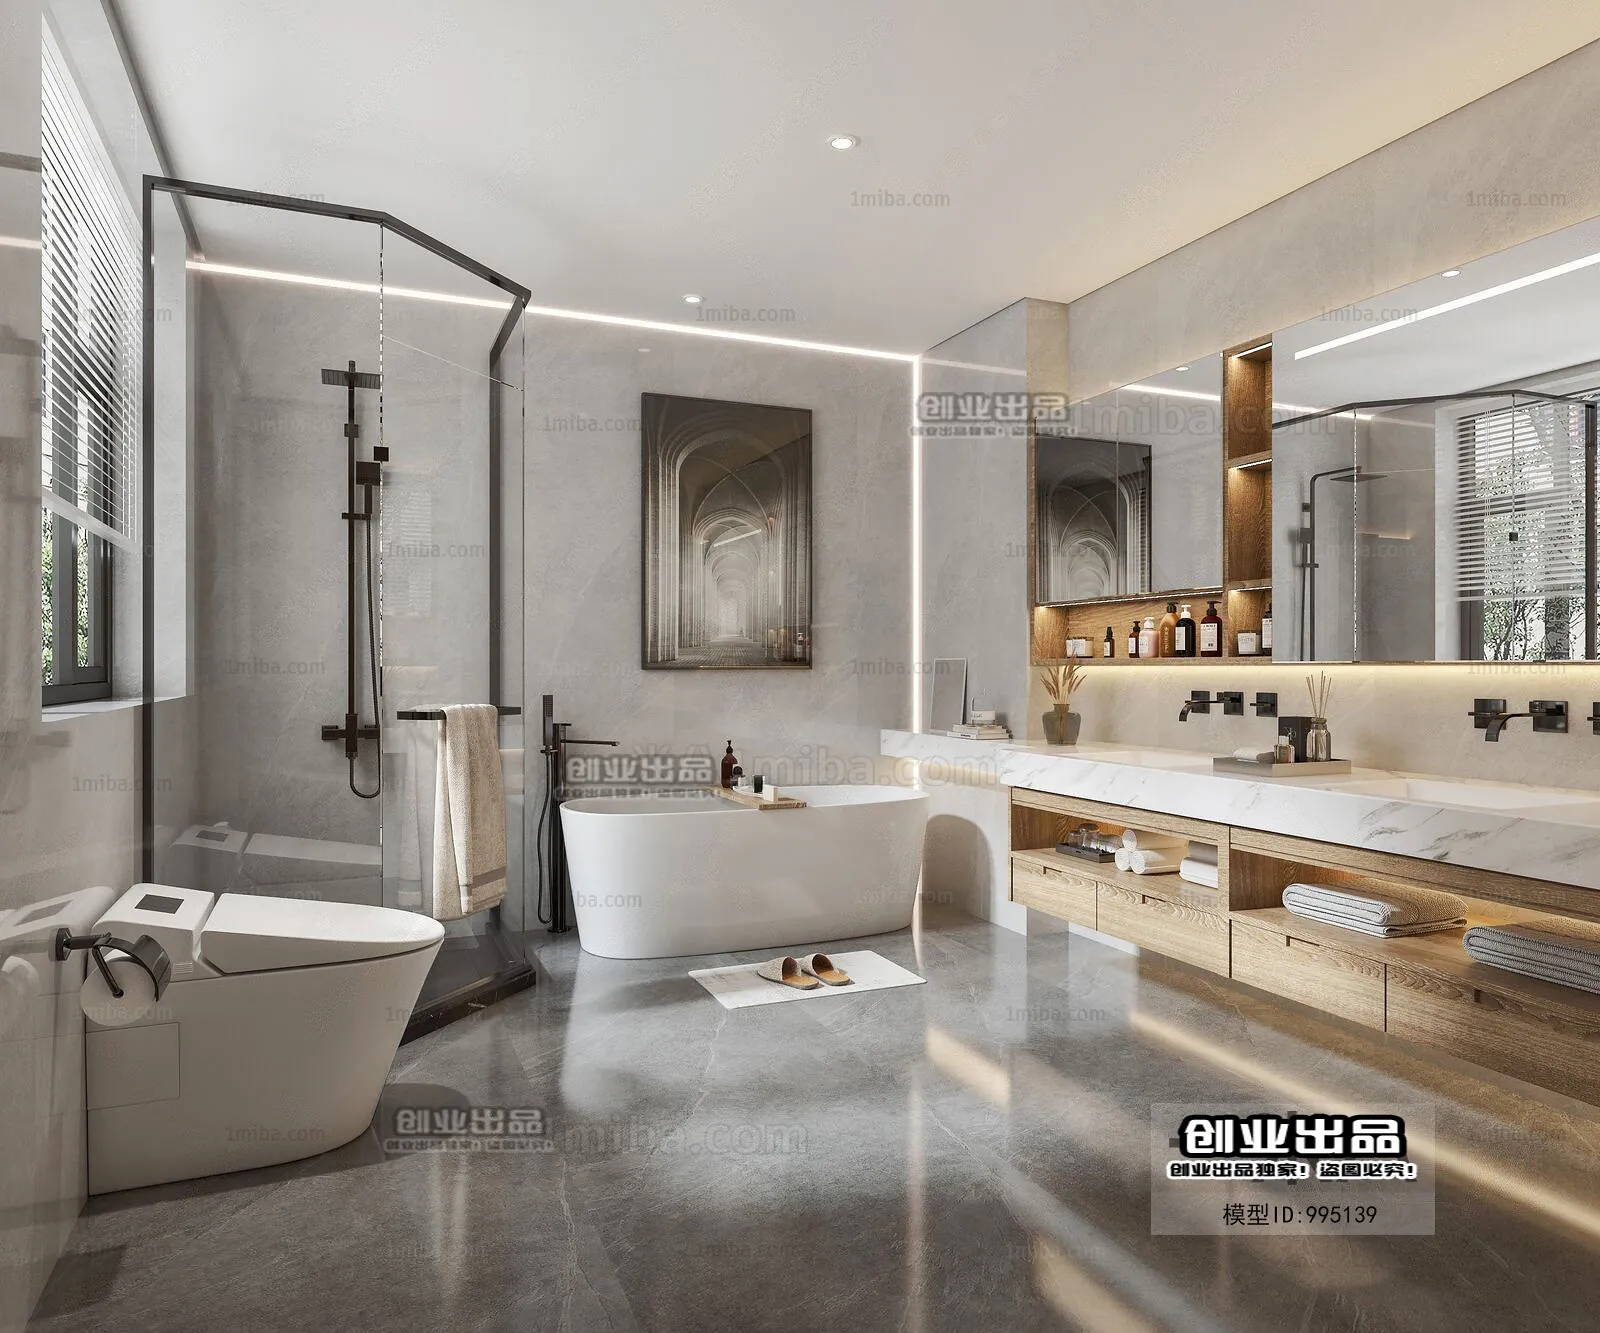 Bathroom – Scandinavian architecture – 013